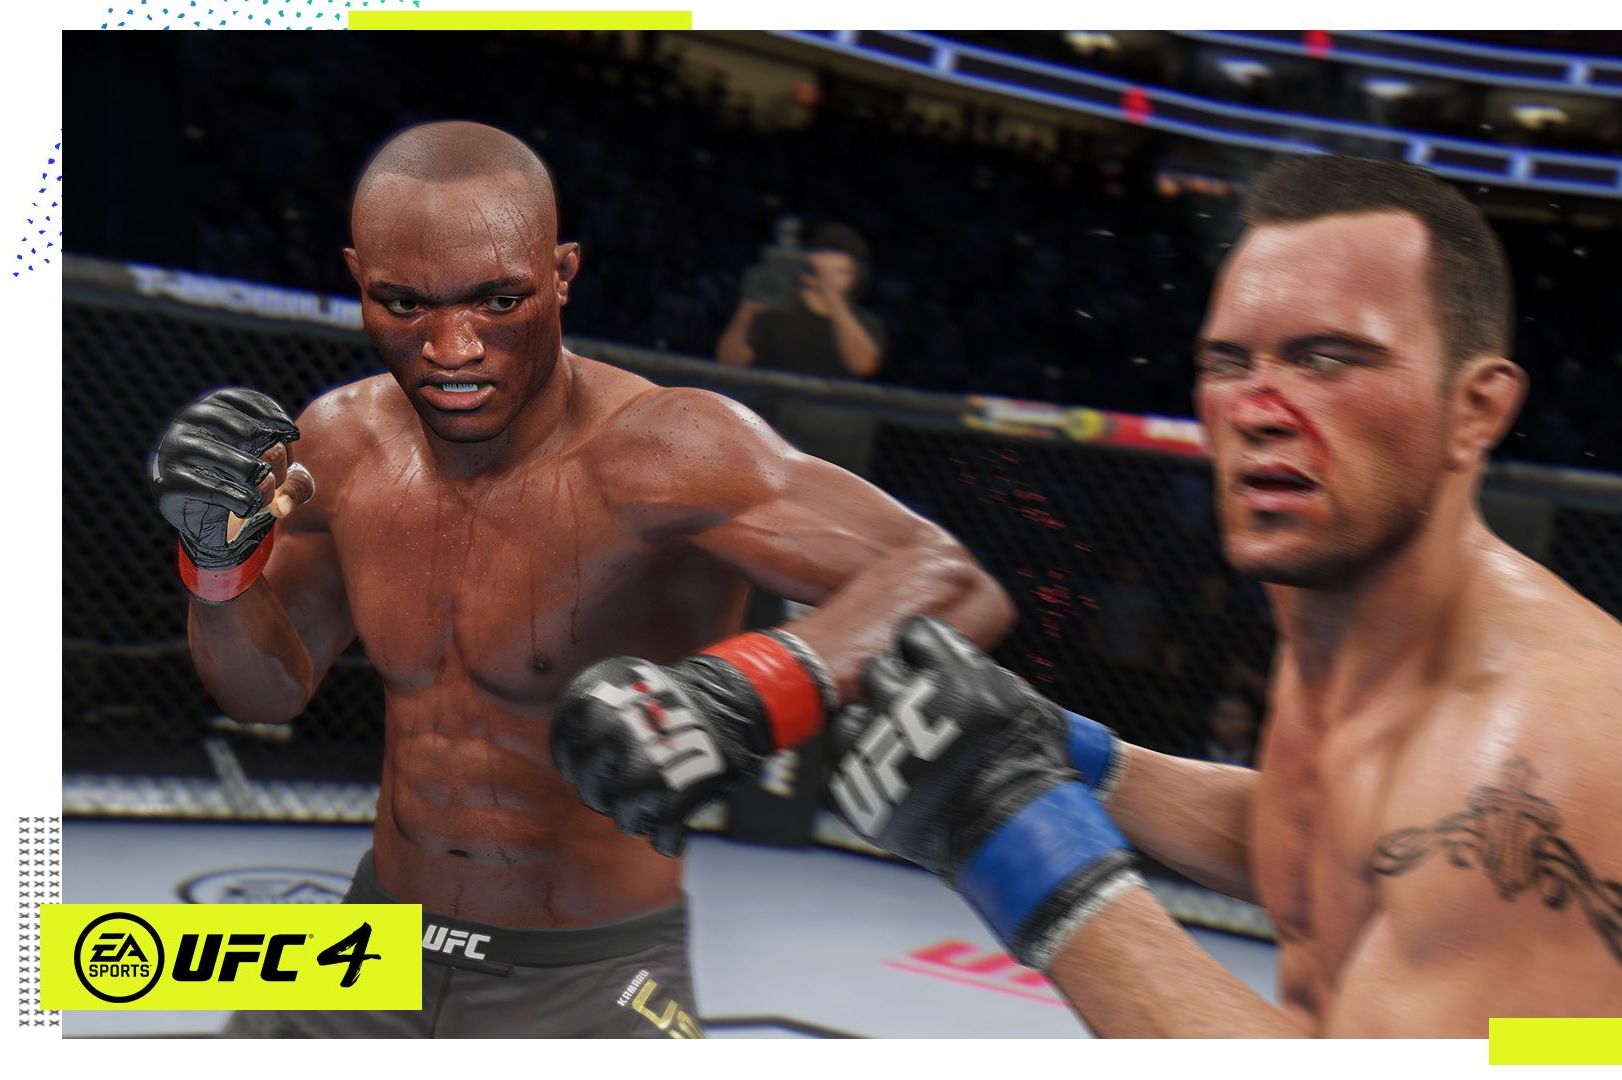 UFC® 4